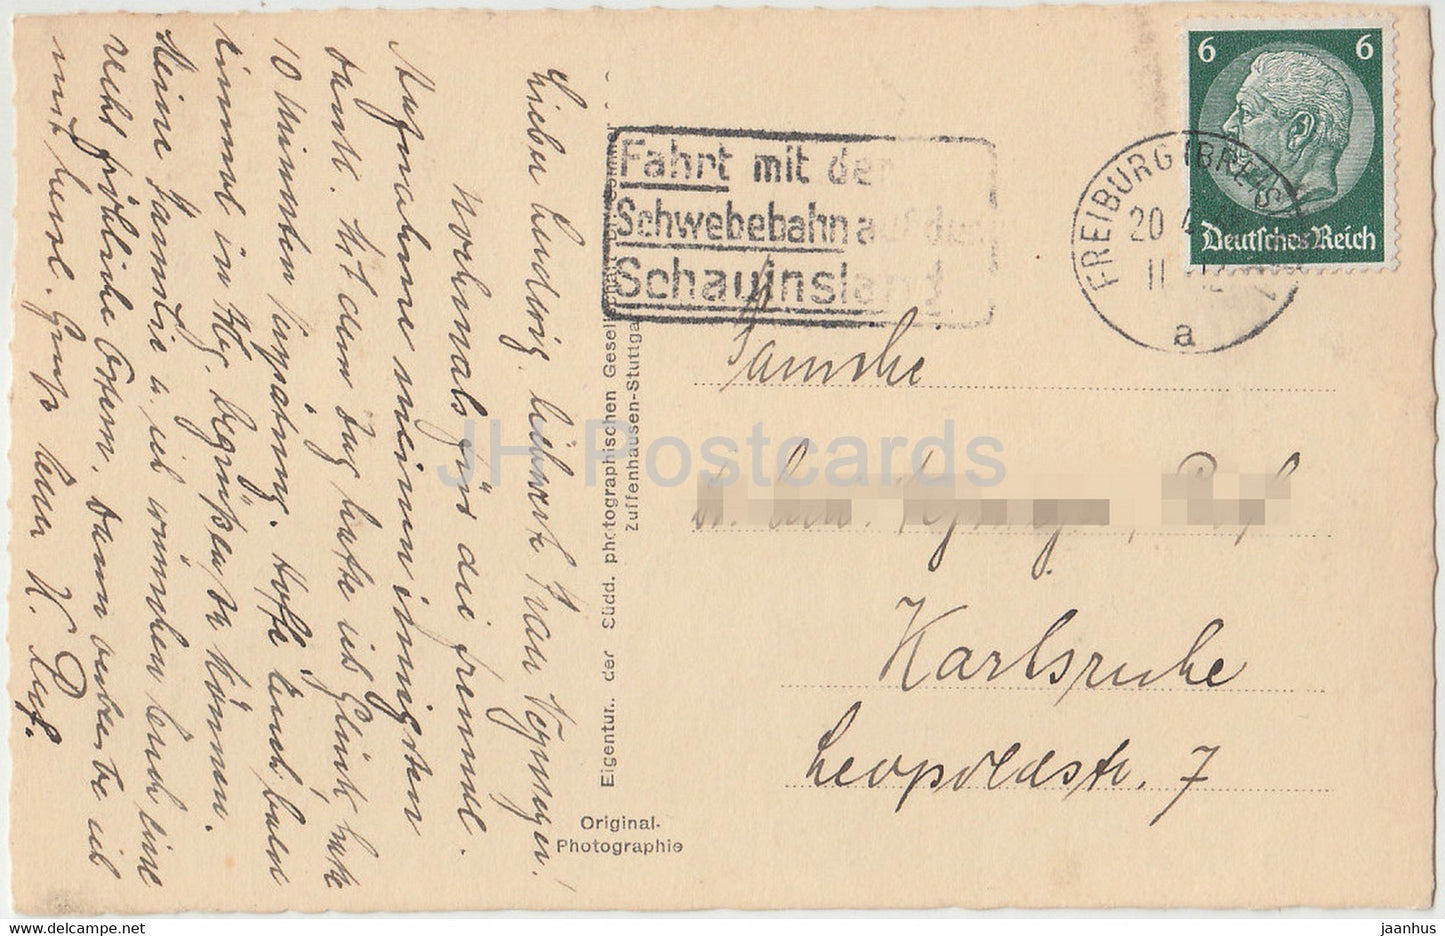 Freiburg i B - 3634 - alte Postkarte - 1943 - Deutschland - gebraucht